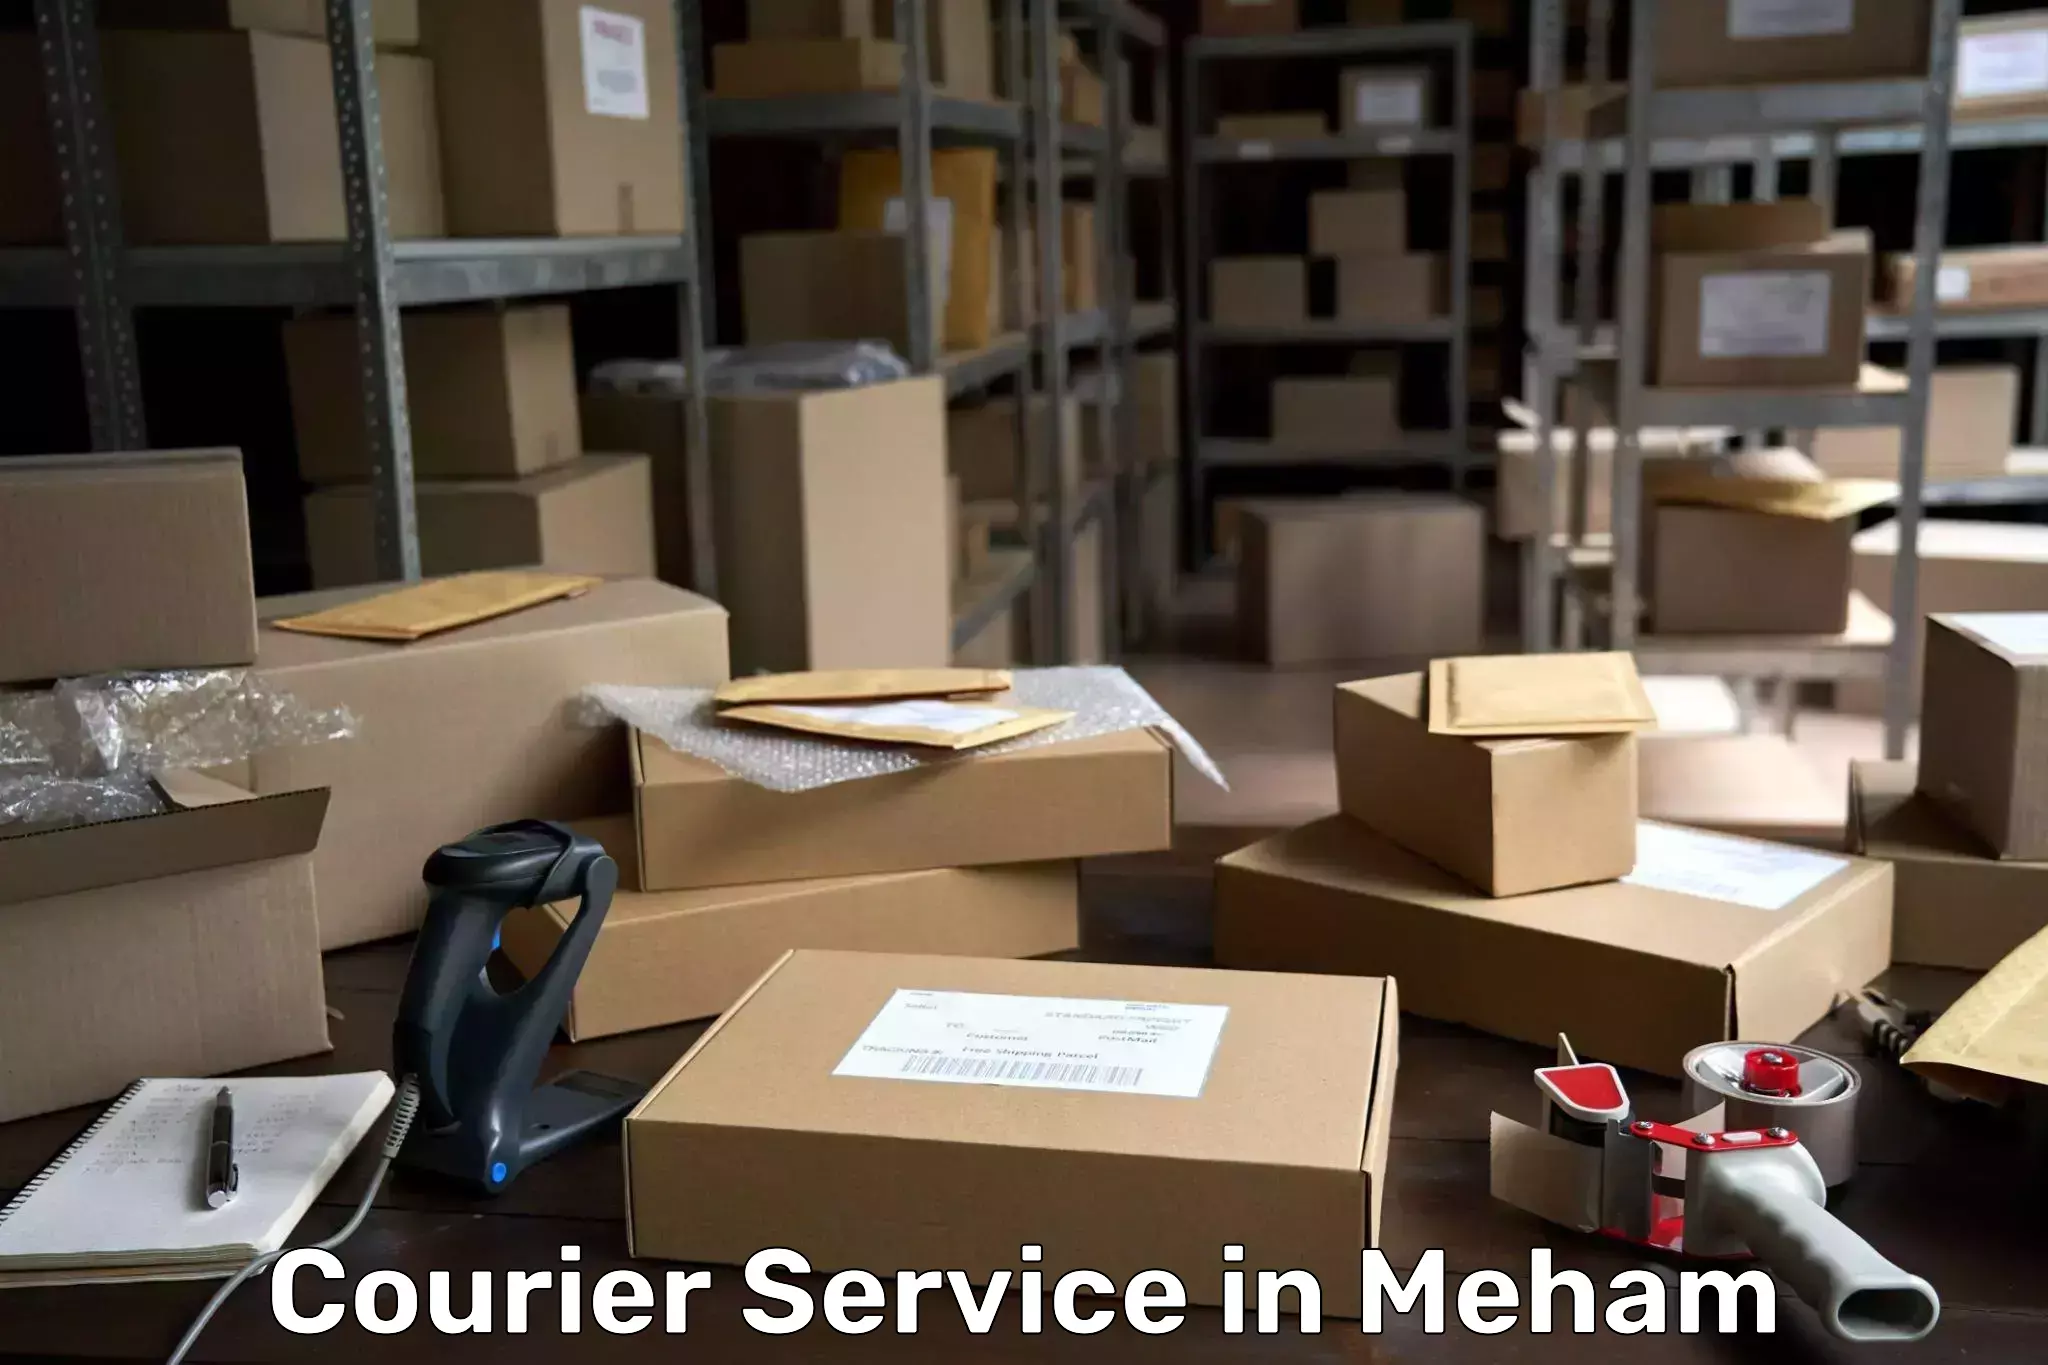 Smart logistics strategies in Meham